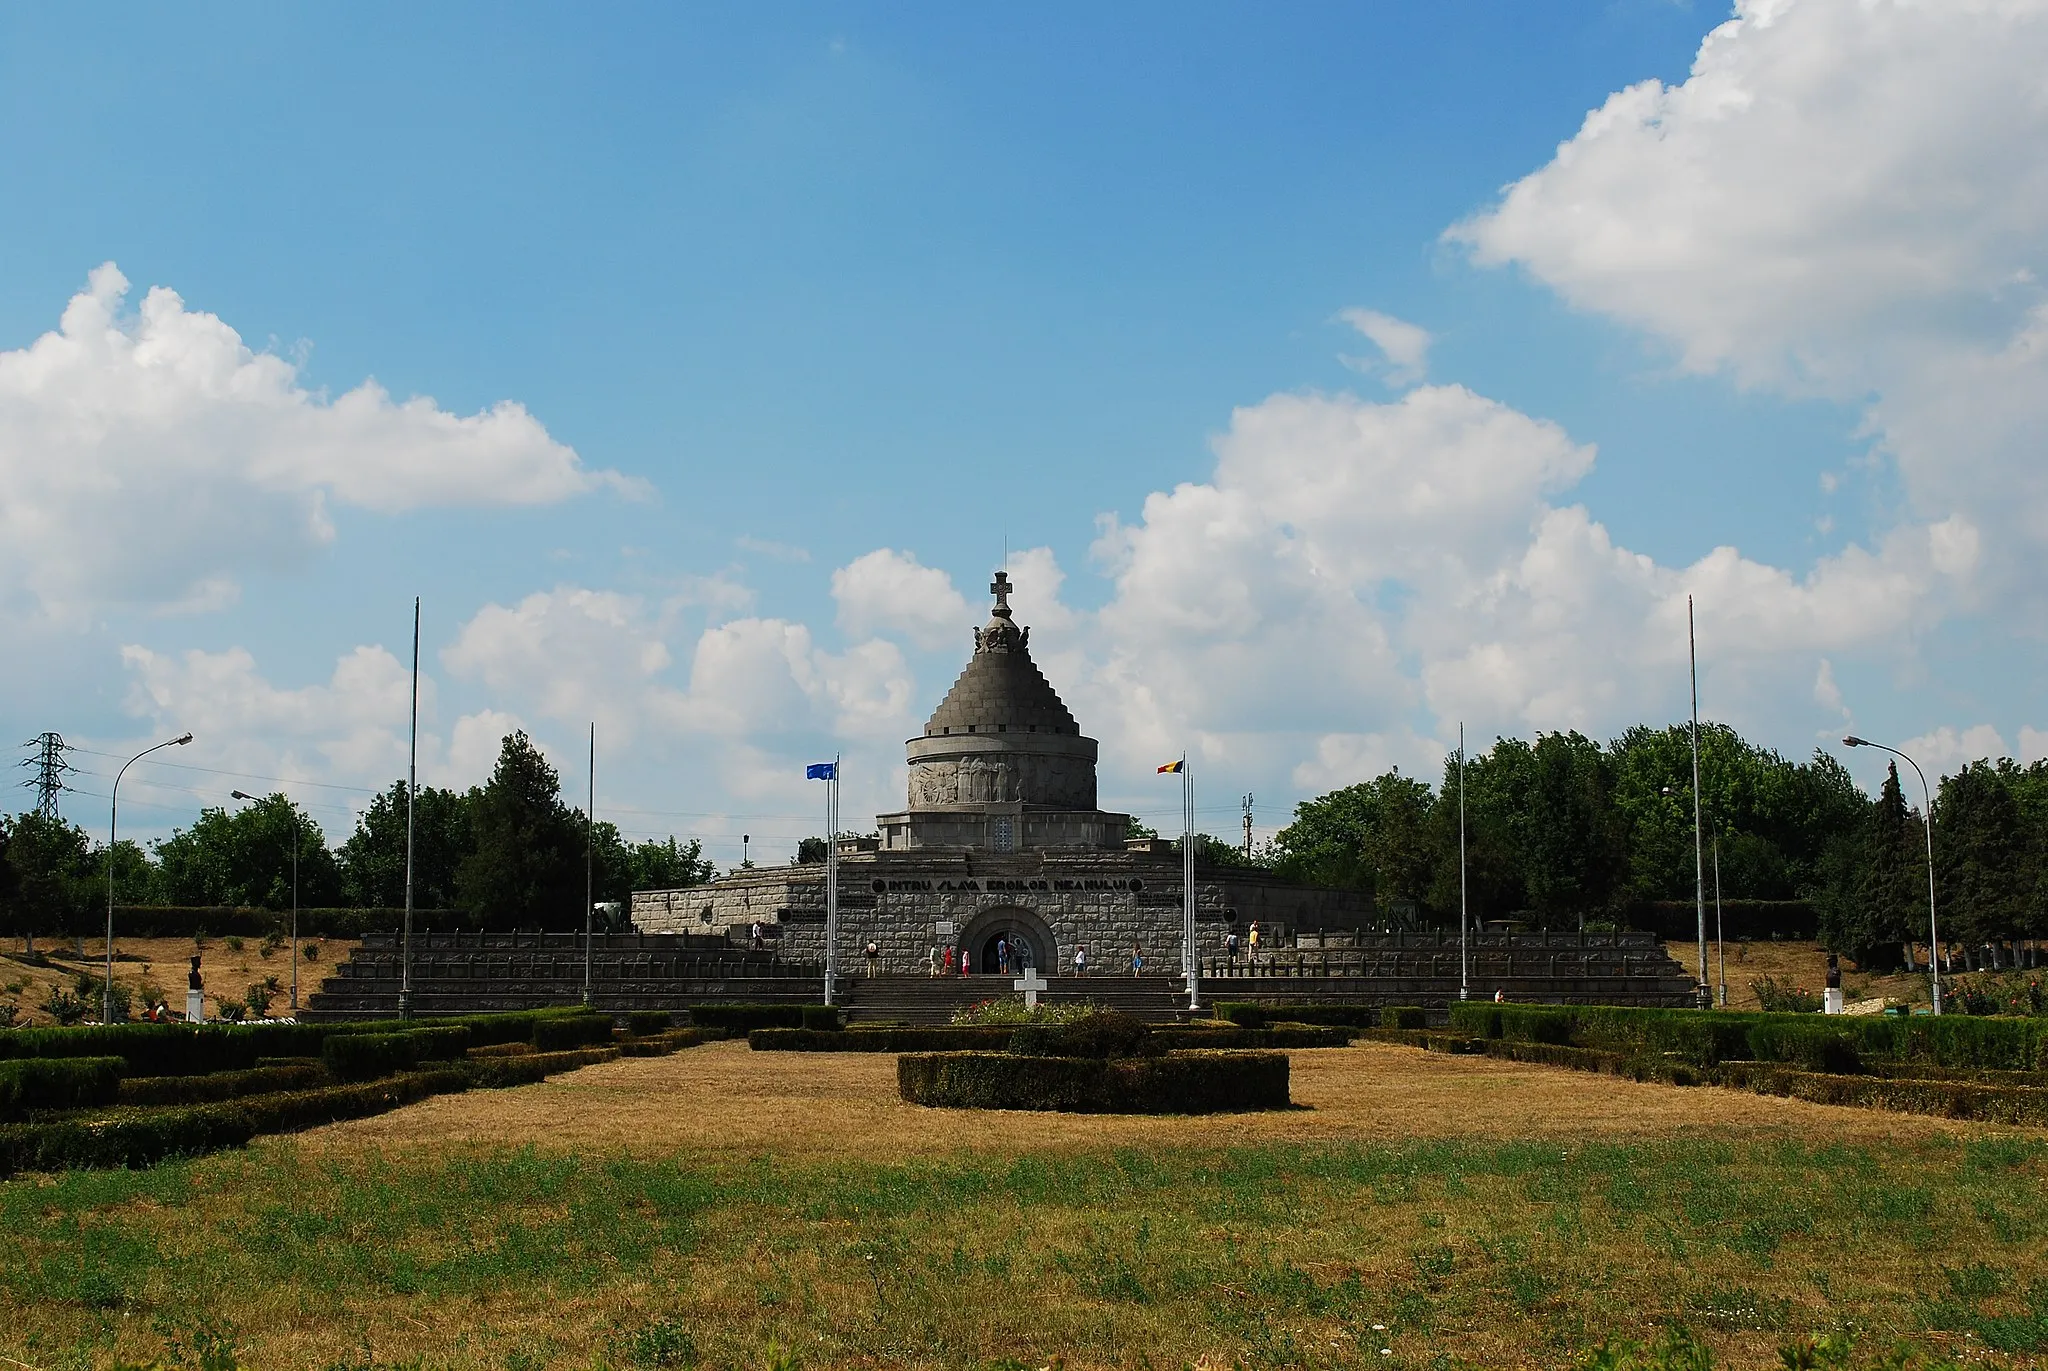 Photo showing: The Mărăşeşti Mausoleum, a World War I monument near the town of Mărăşeşti, Romania